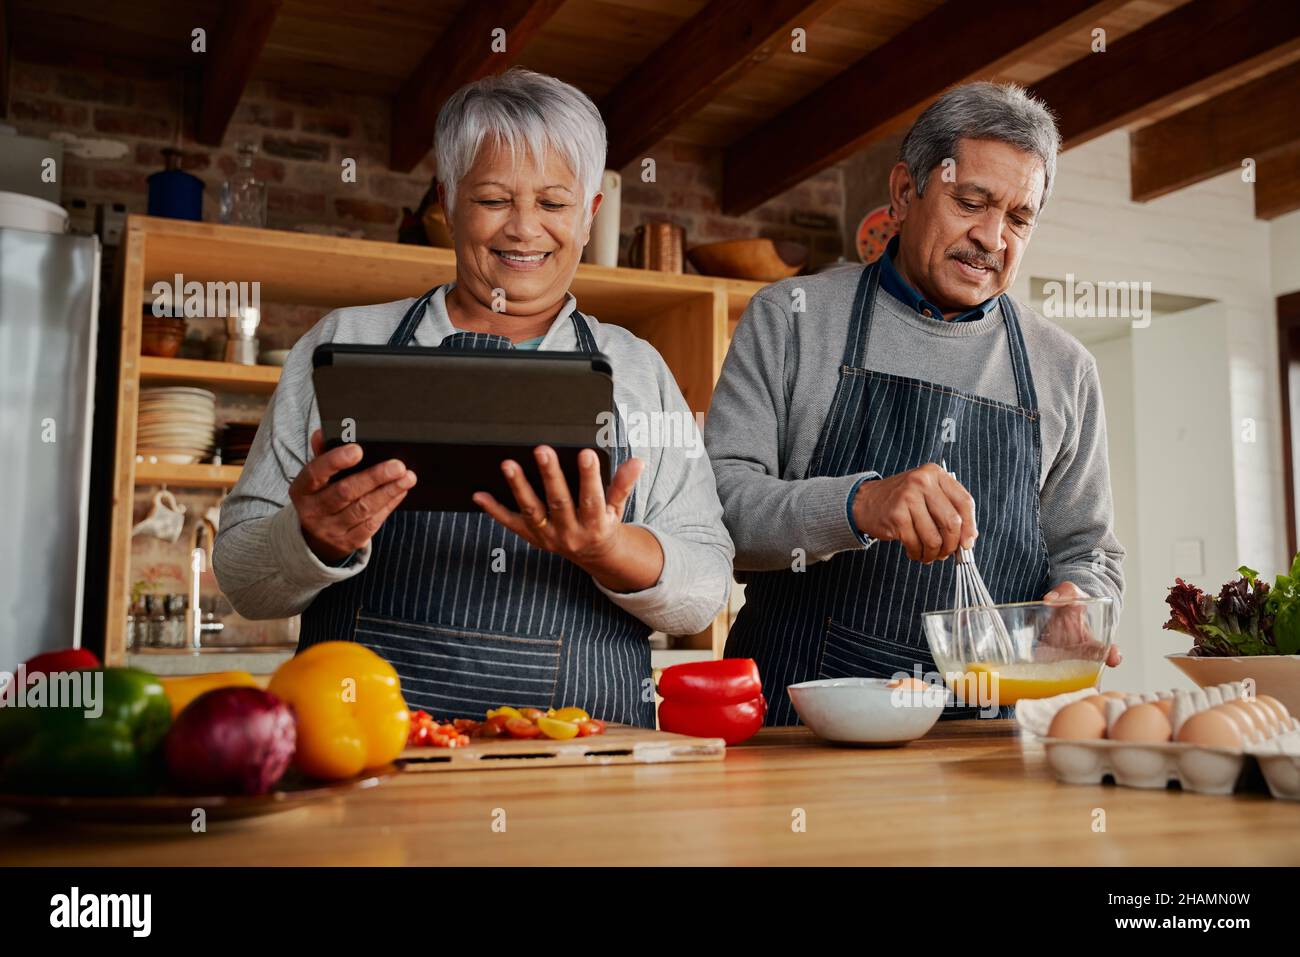 Hände von multikulturellen älteren Frauen, die ein Tablet benutzen, um Rezepte in der Küche zu erforschen. Glückliches Paar, das gesunde Mahlzeiten kocht. Stockfoto